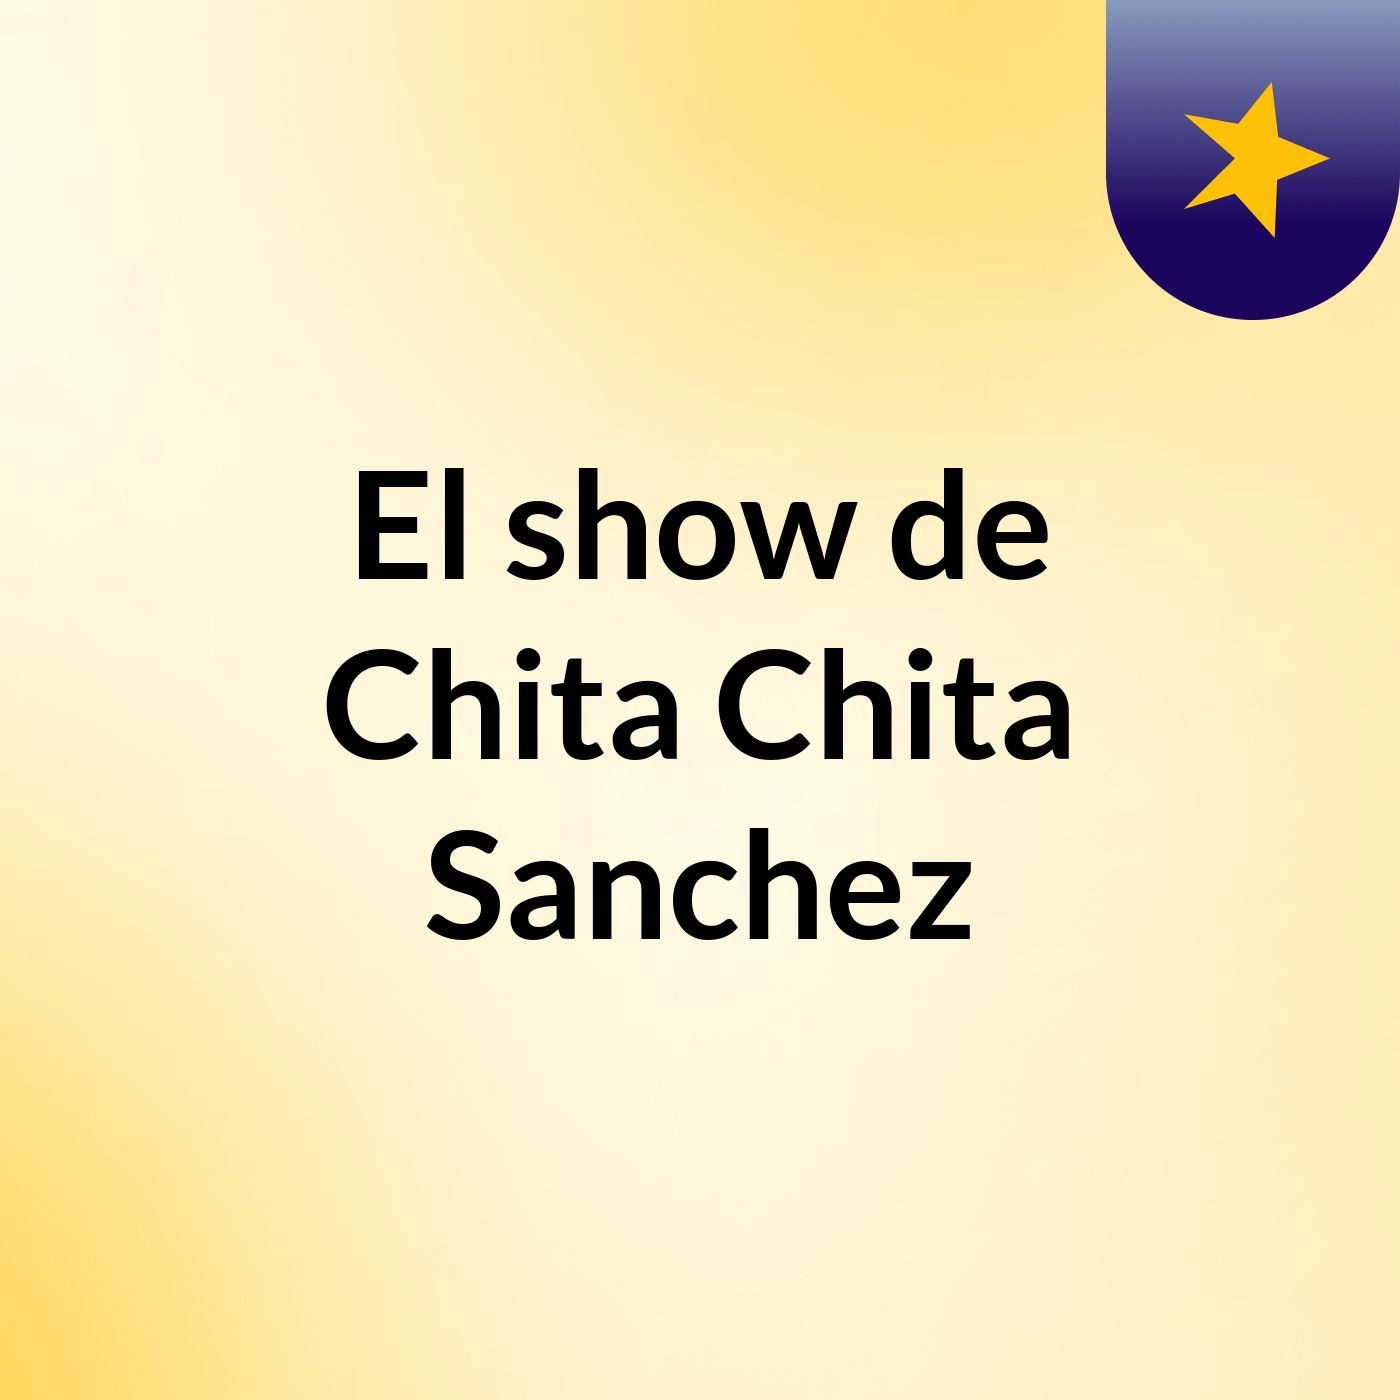 El show de Chita Chita Sanchez